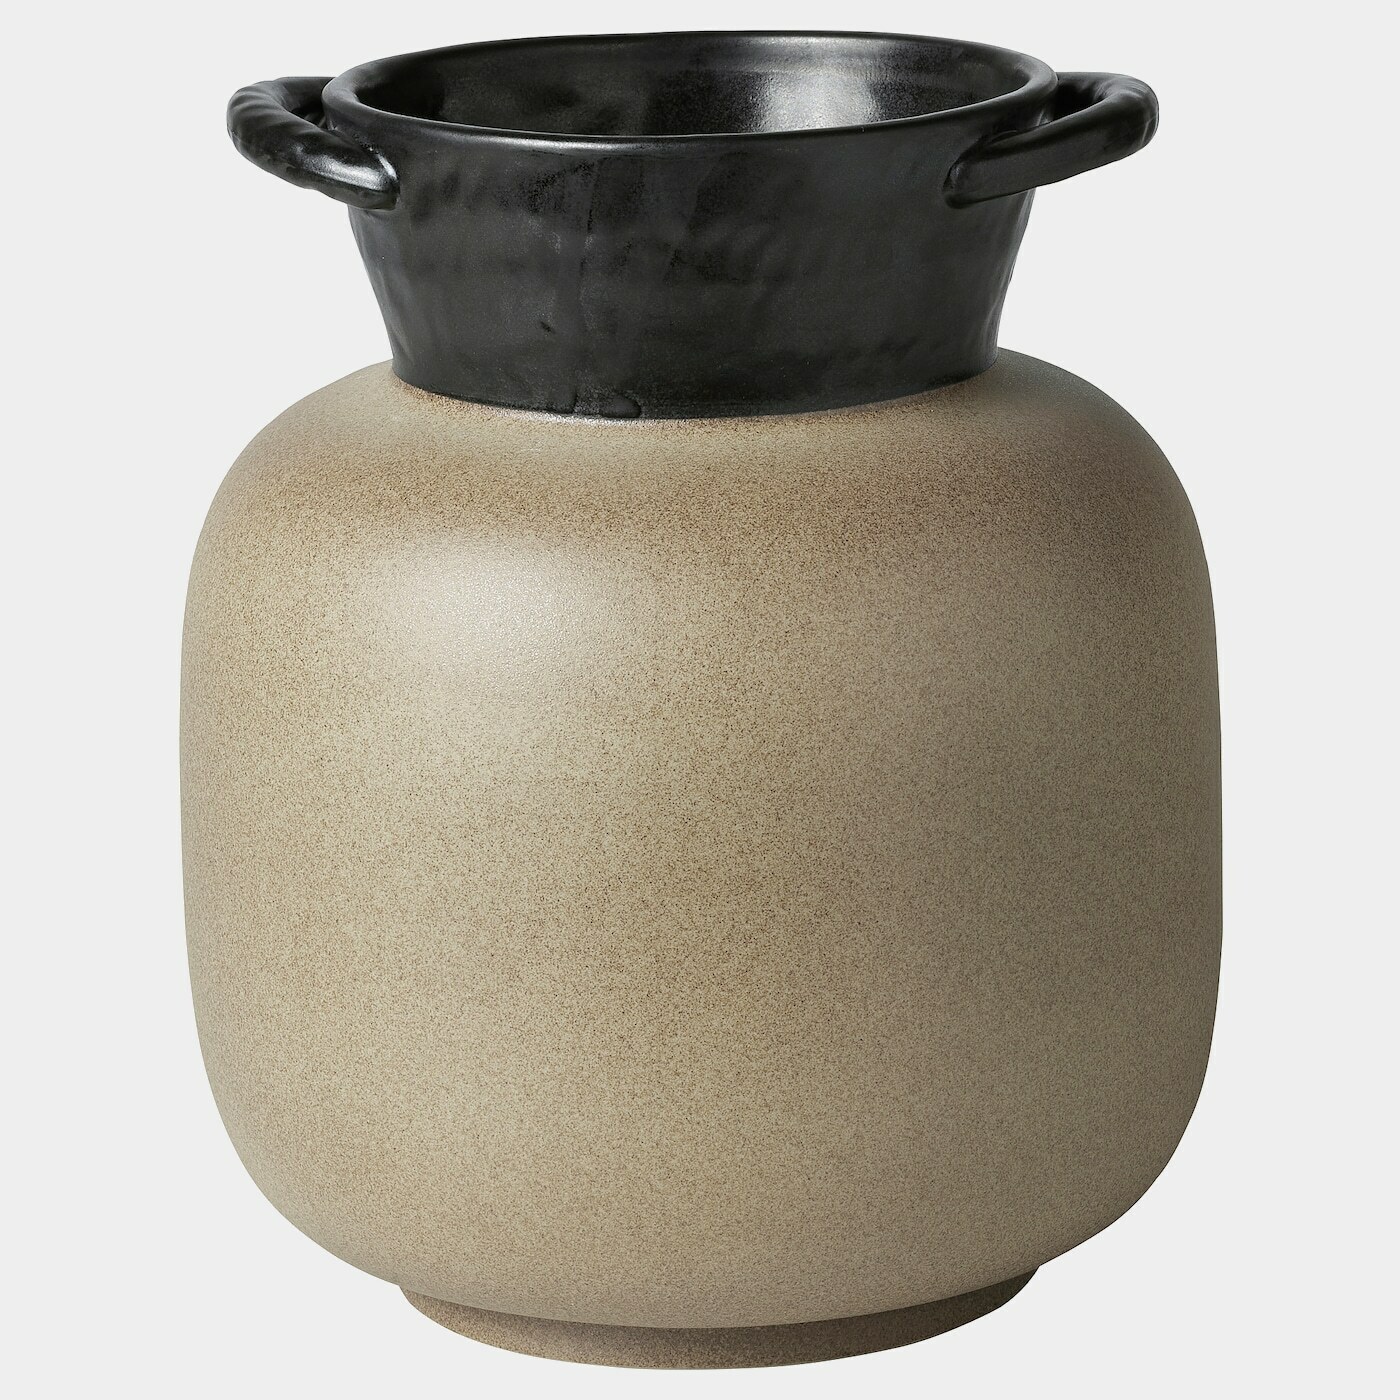 LOKALT Vase  -  - Möbel Ideen für dein Zuhause von Home Trends. Möbel Trends von Social Media Influencer für dein Skandi Zuhause.